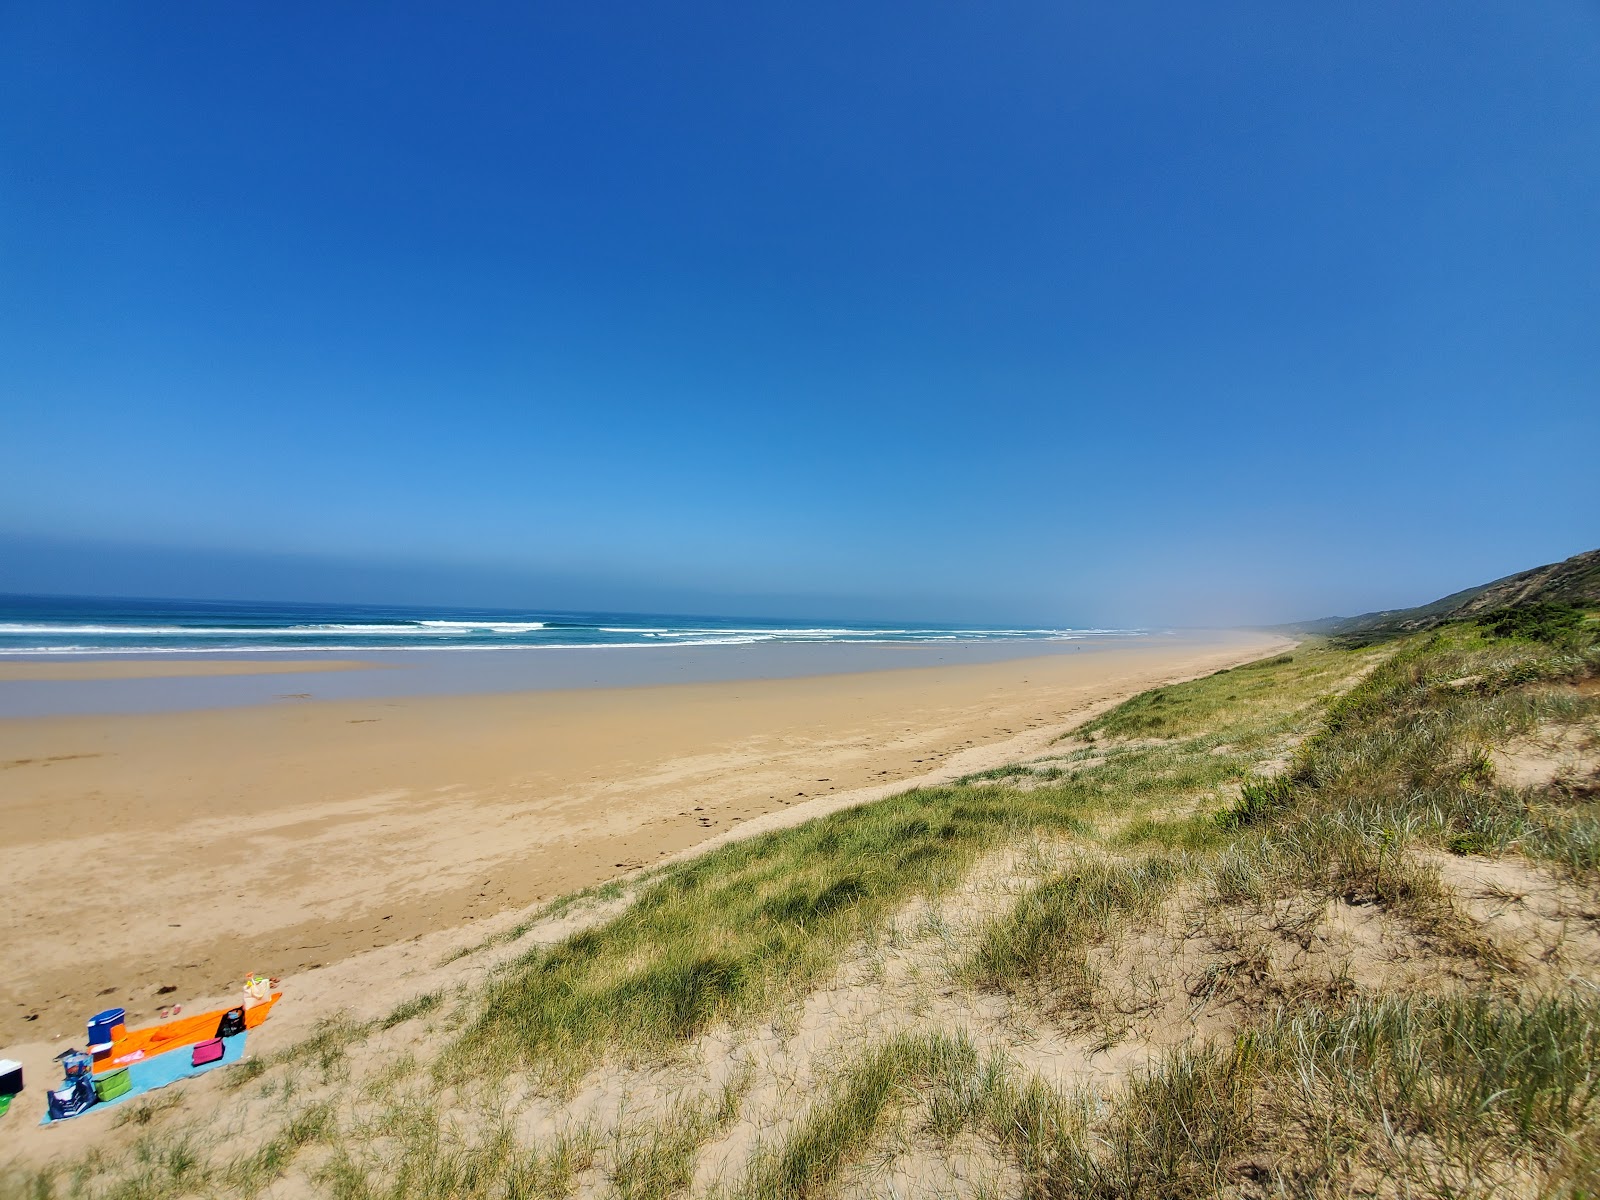 Fotografie cu Number 3 Beach - locul popular printre cunoscătorii de relaxare